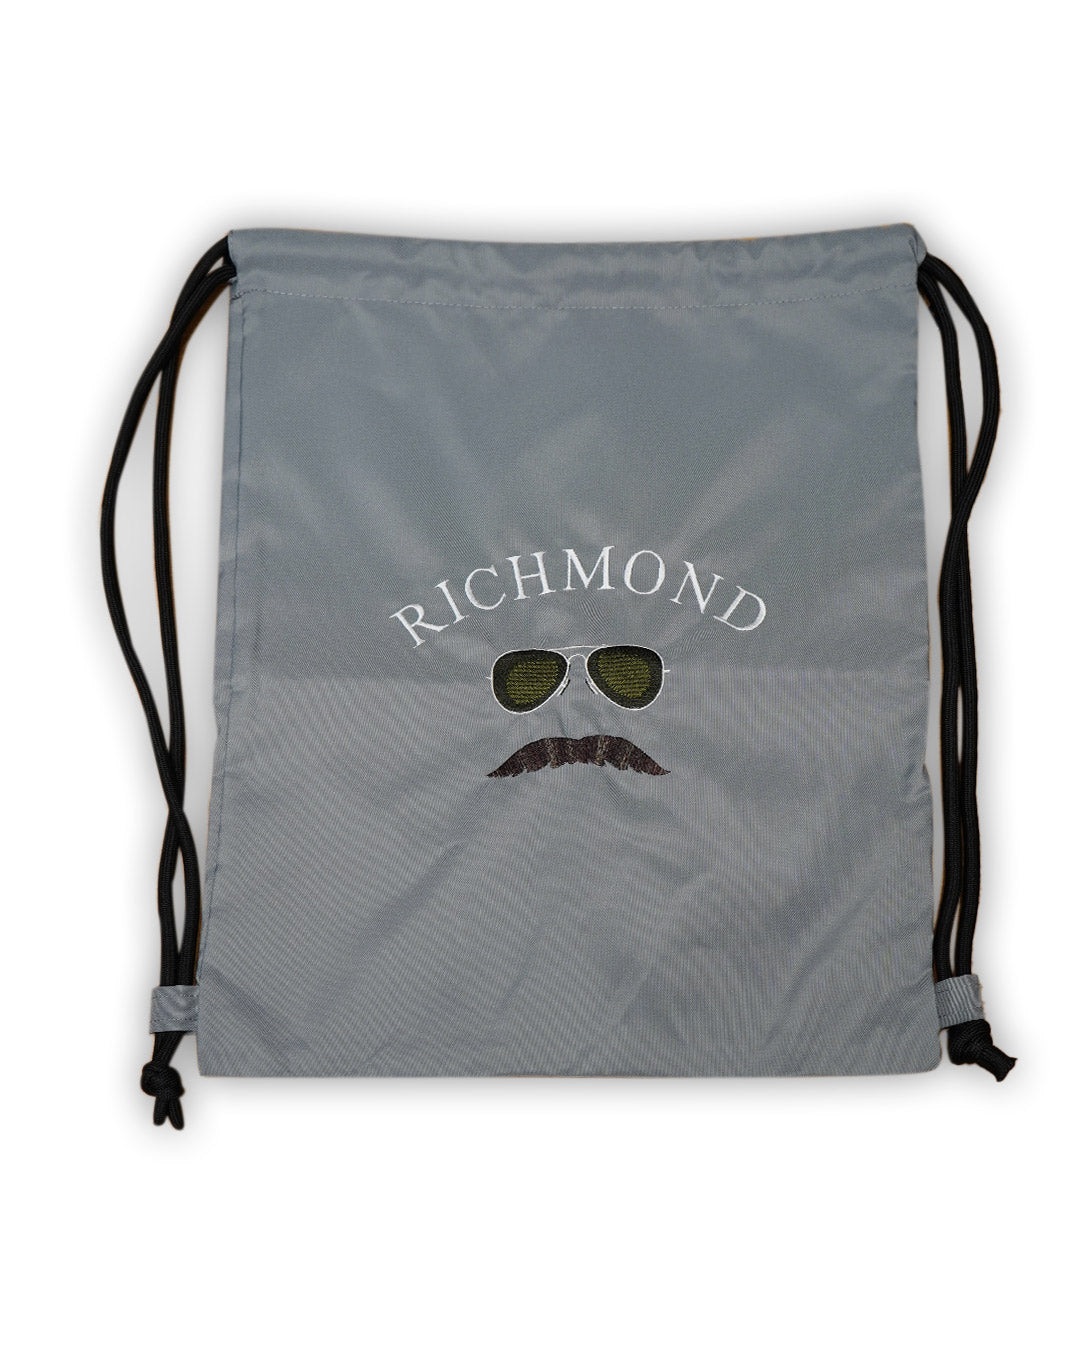 Ted Richmond Bag